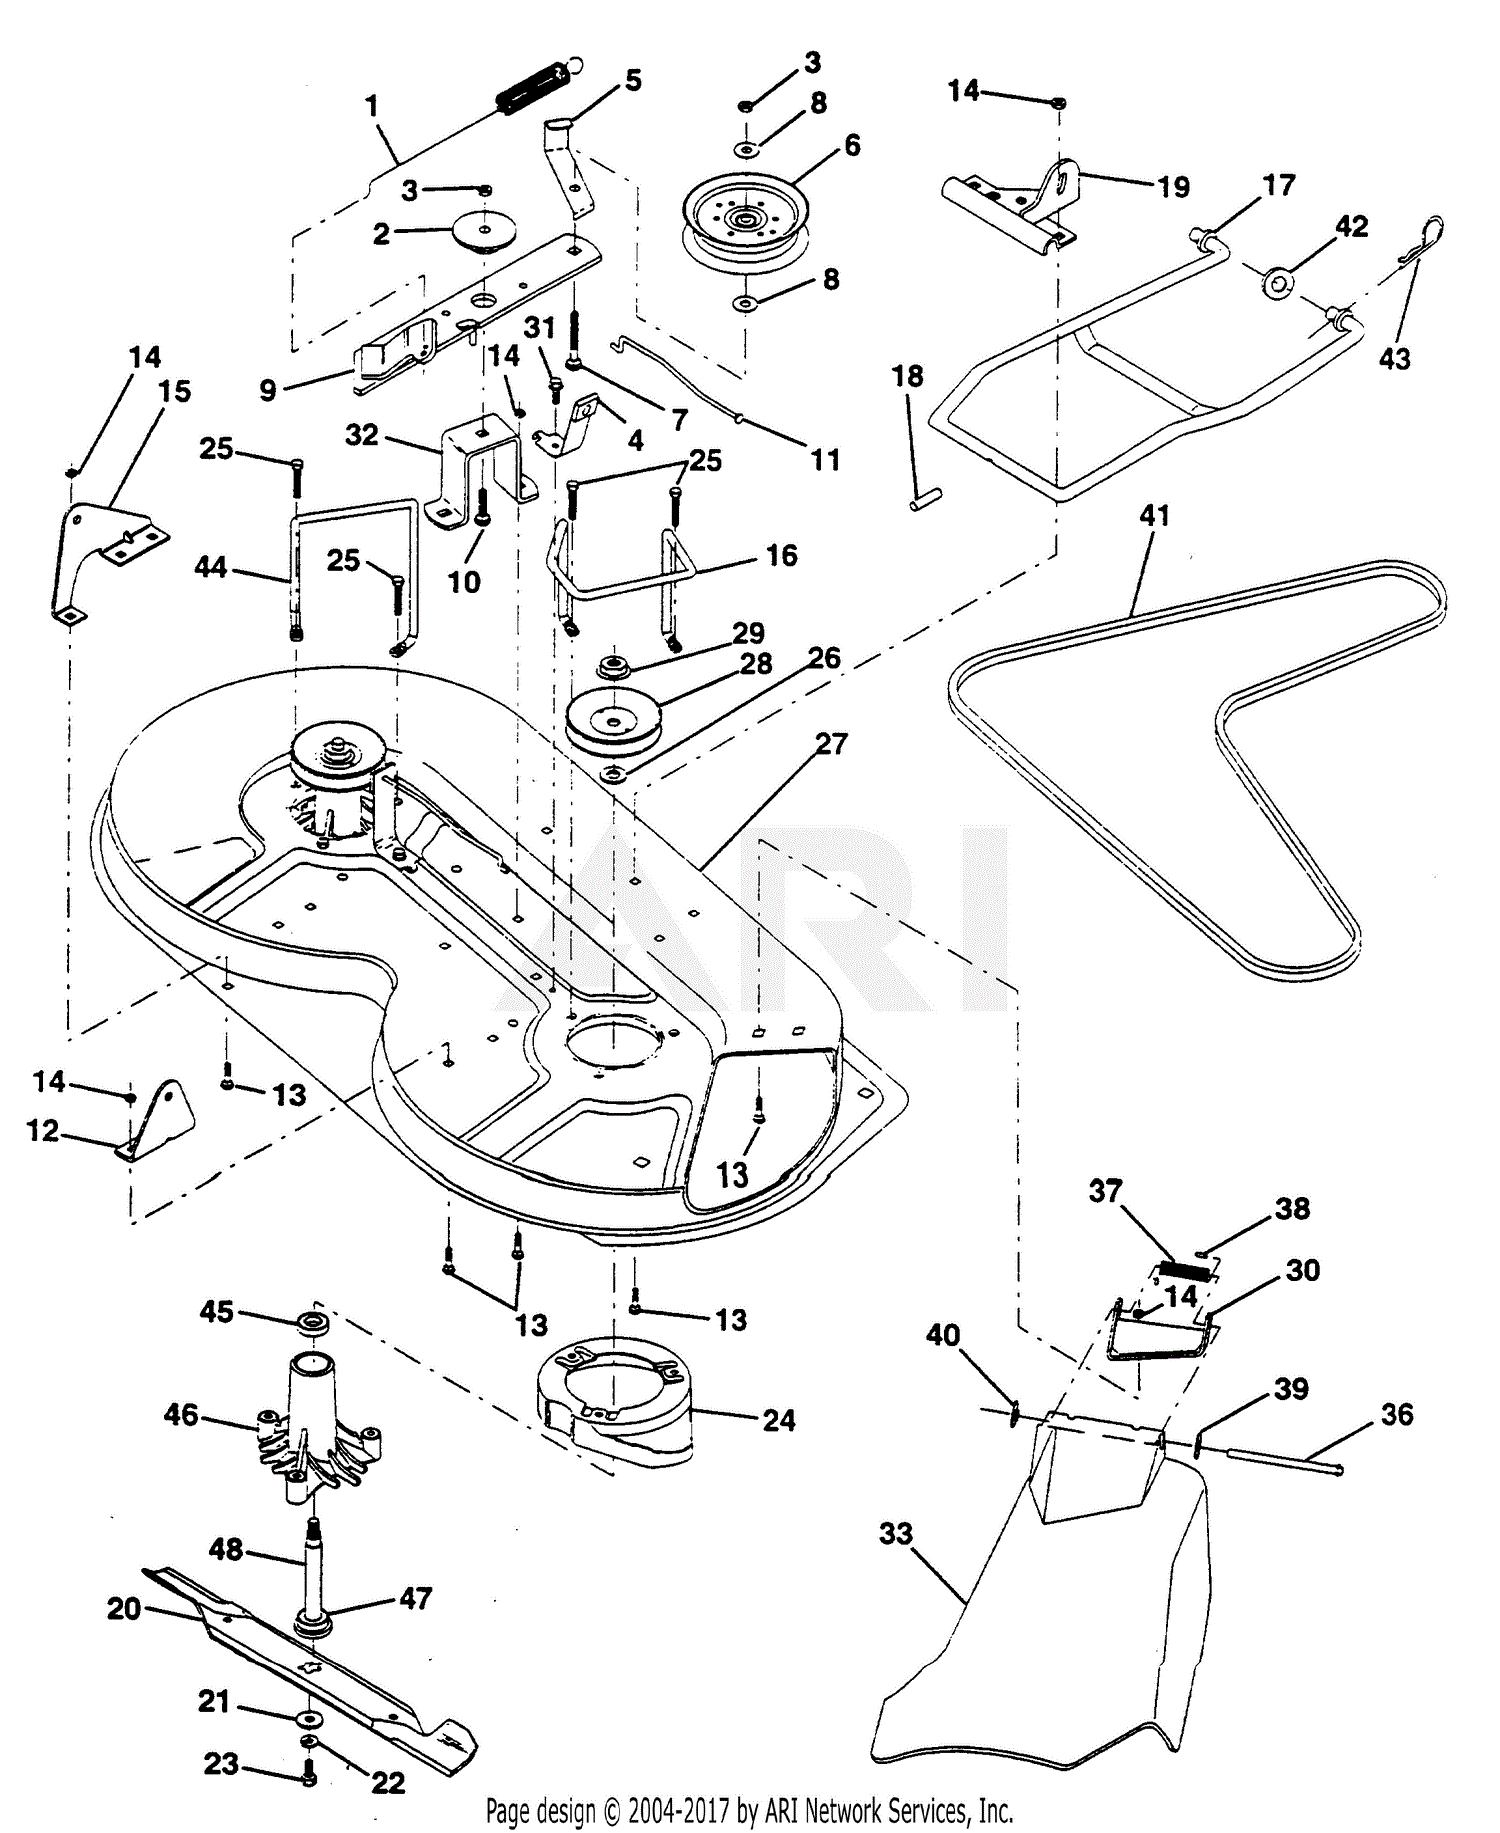 30 Poulan Riding Mower Parts Diagram Wiring Diagram Database